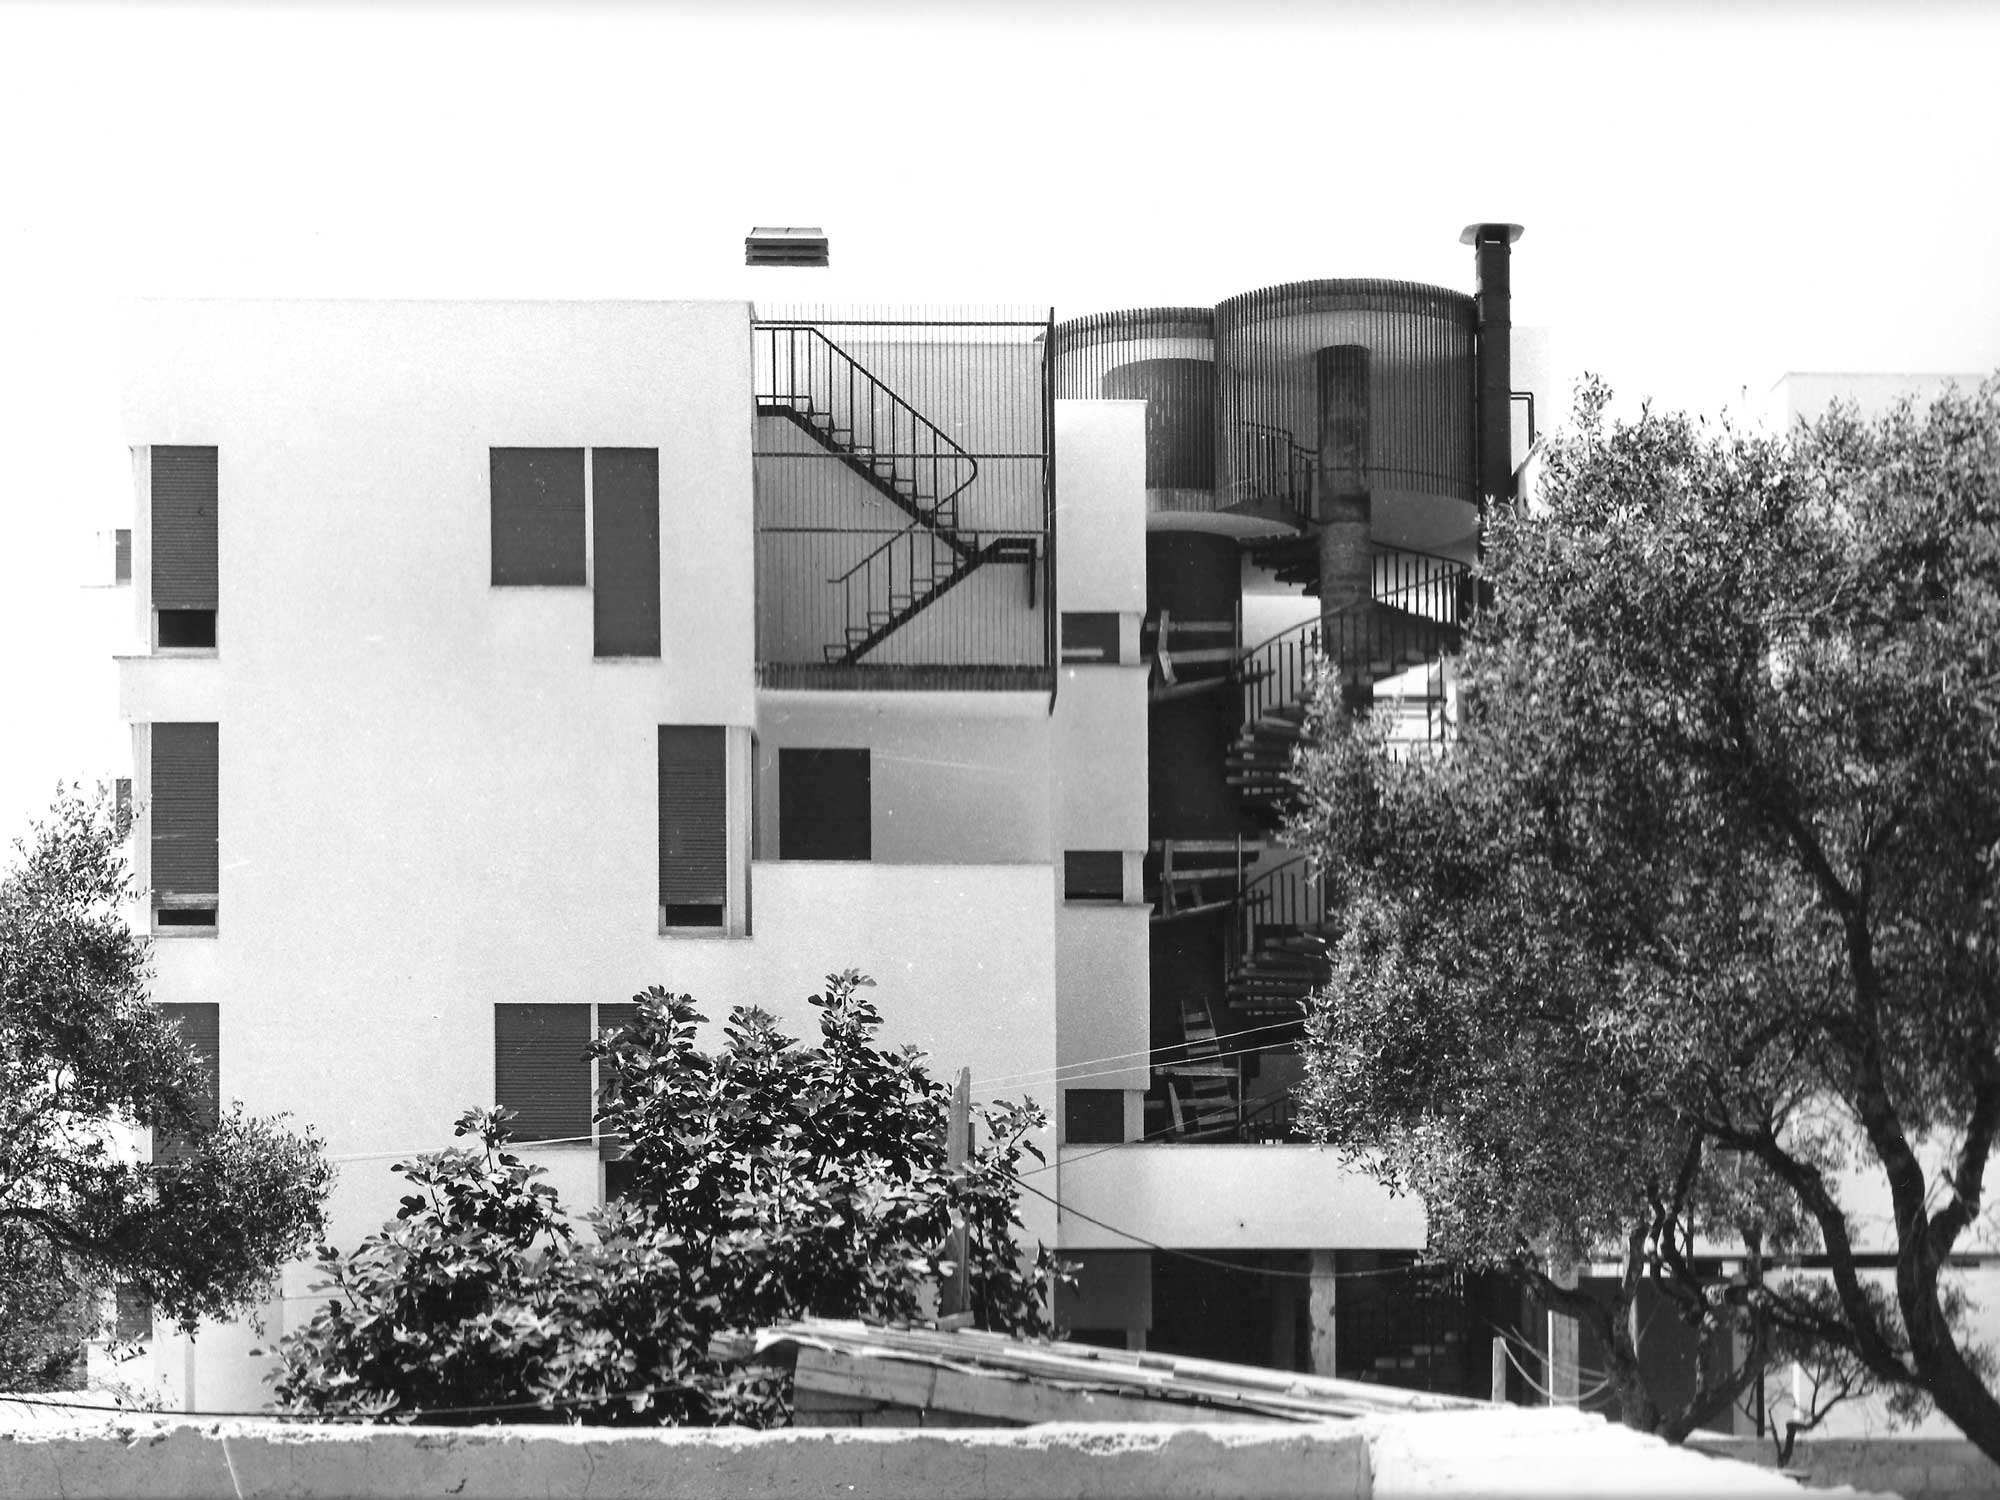 2 - Edificio per abitazioni in Civitavecchia (RM), per Impr. Fratelli Tito; in collaborazione - Vista esternadettaglio